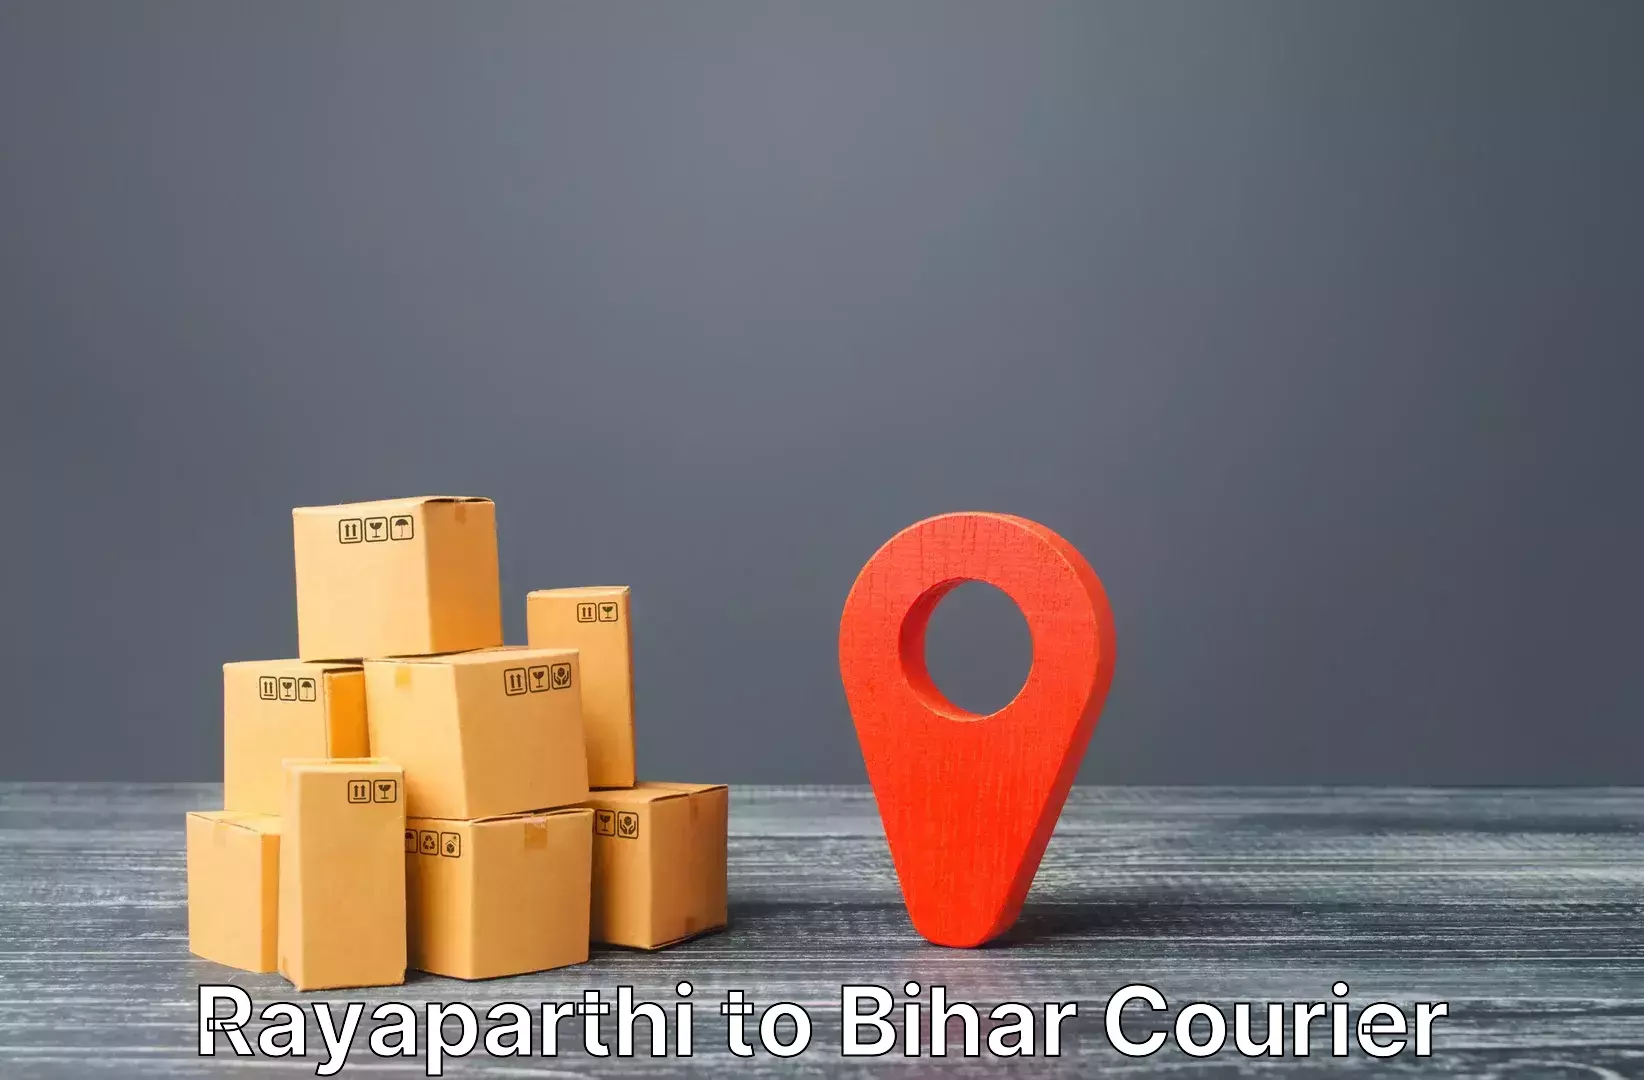 Online luggage shipping booking Rayaparthi to Dinara